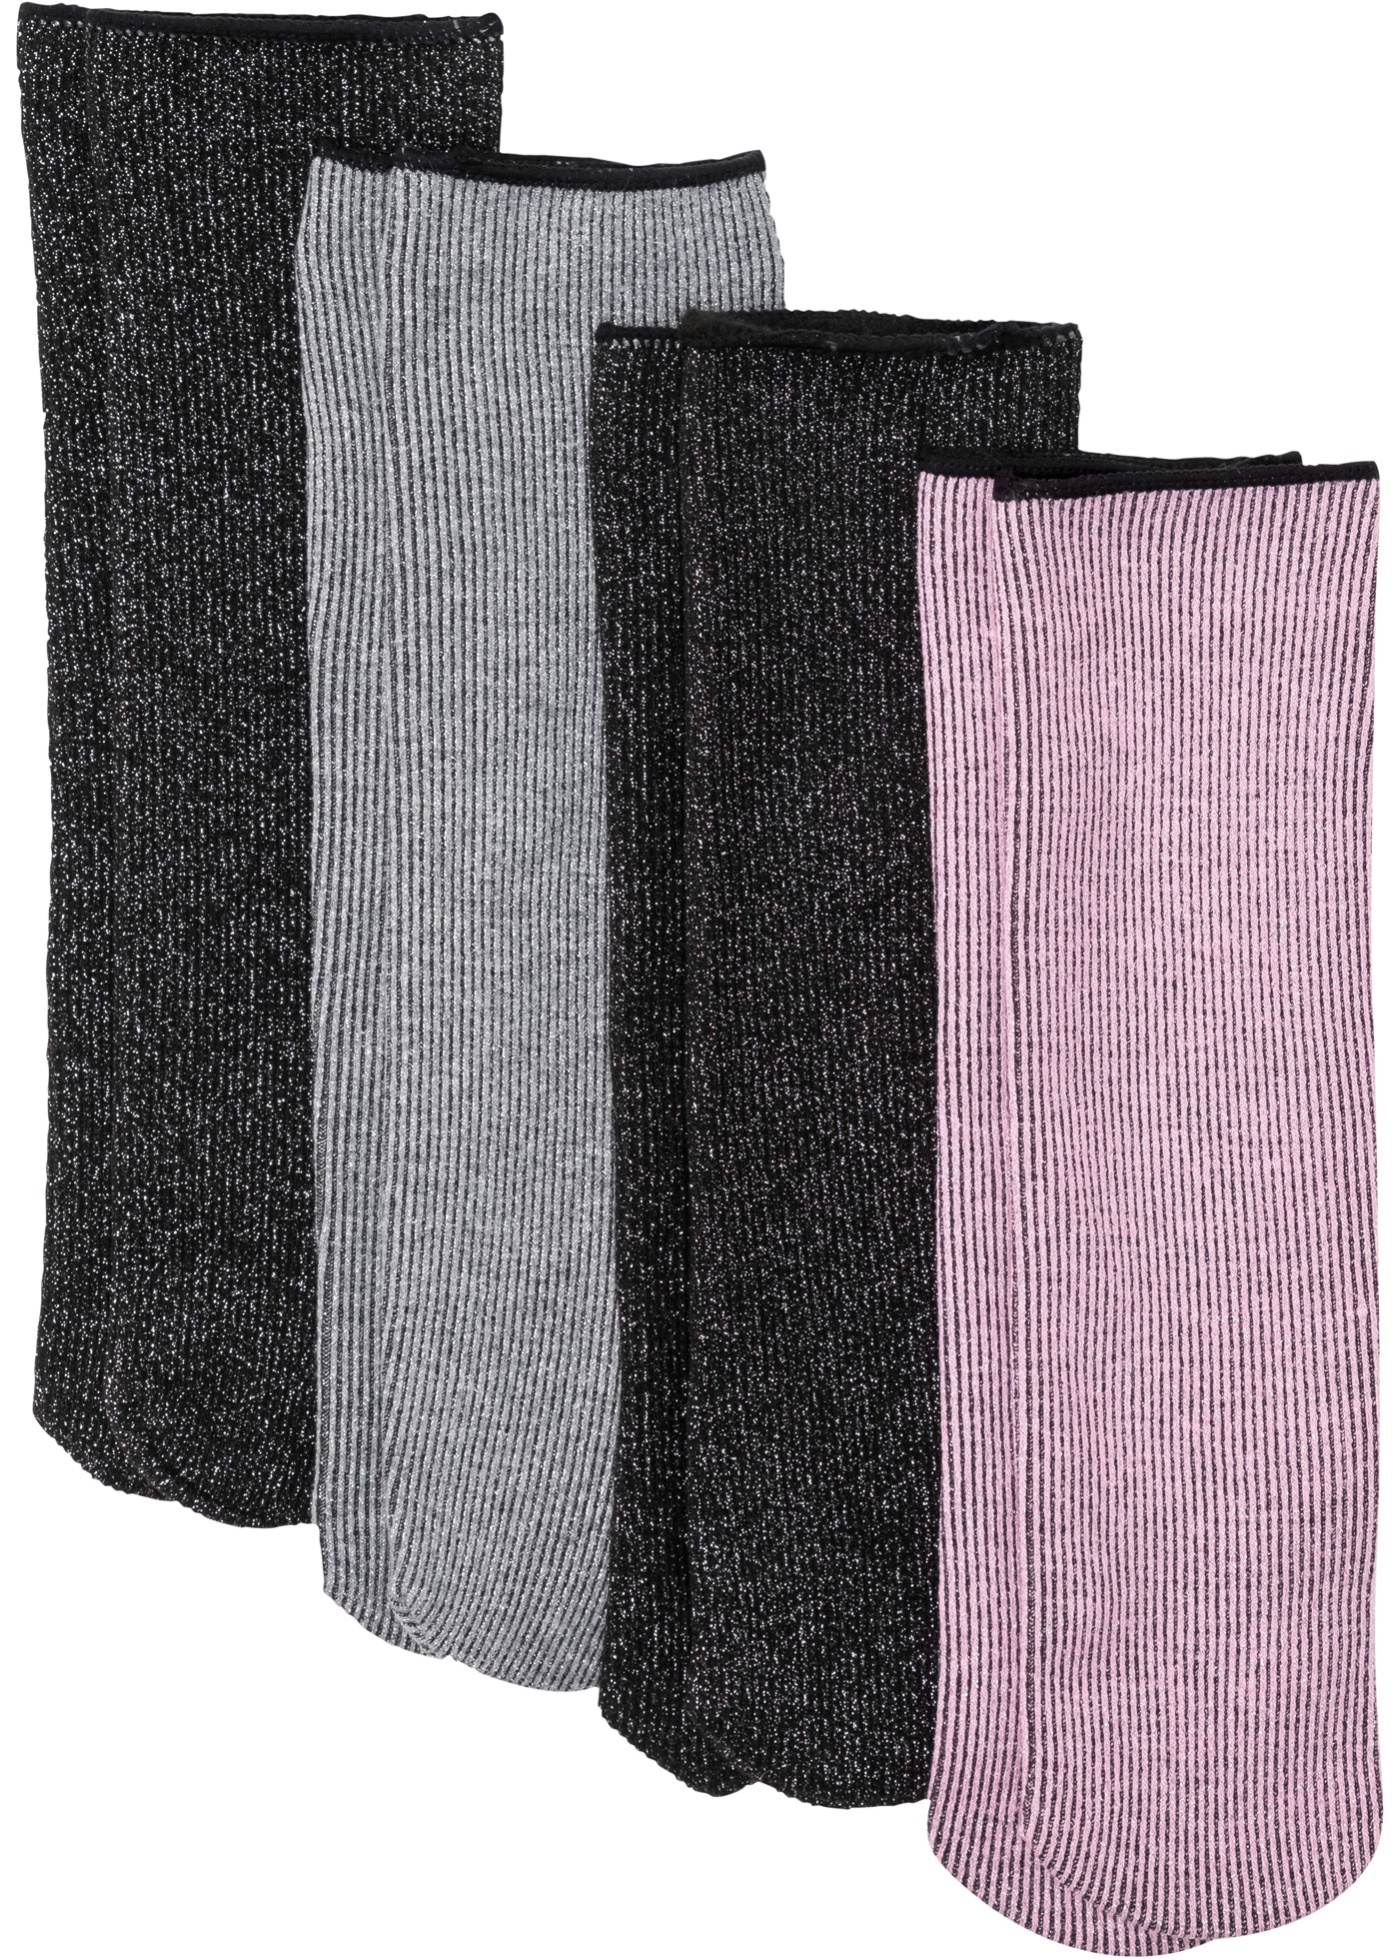 Ponožky, termo, ligotavé vlákna (4 ks v balení)